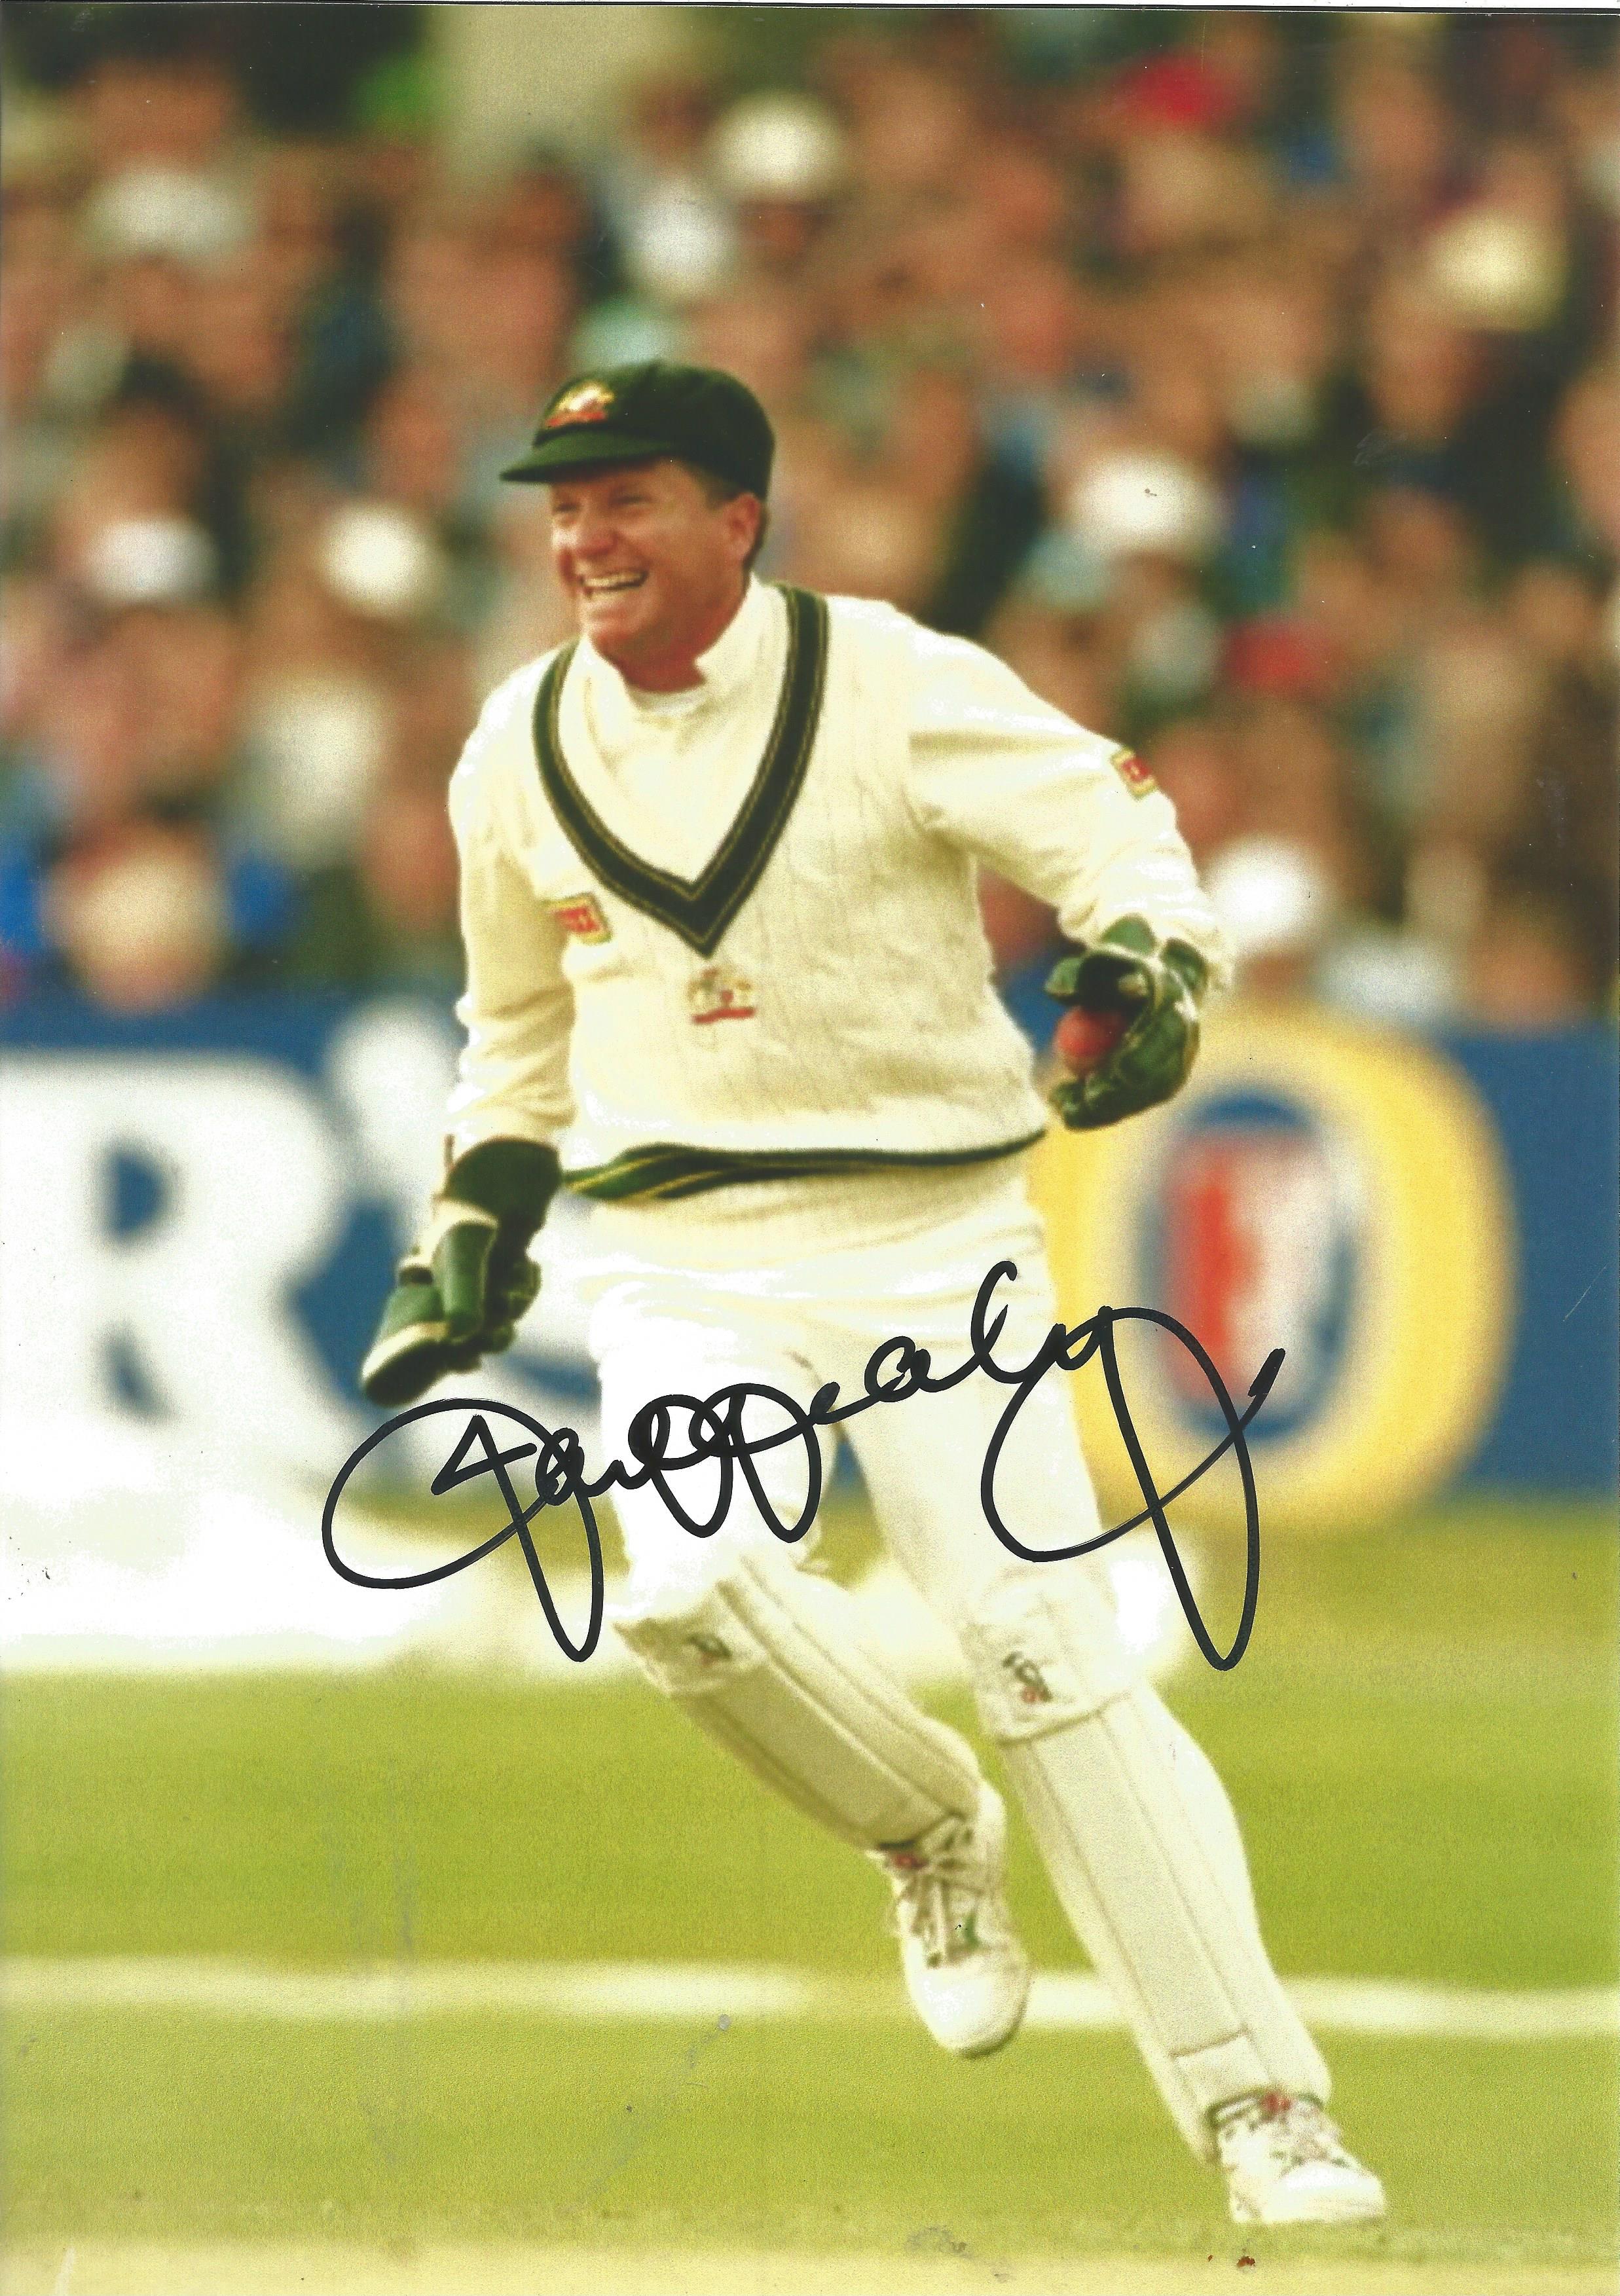 Cricket Ian Healy signed 12x8 colour photo. Ian Andrew Healy AO (born 30 April 1964) is an